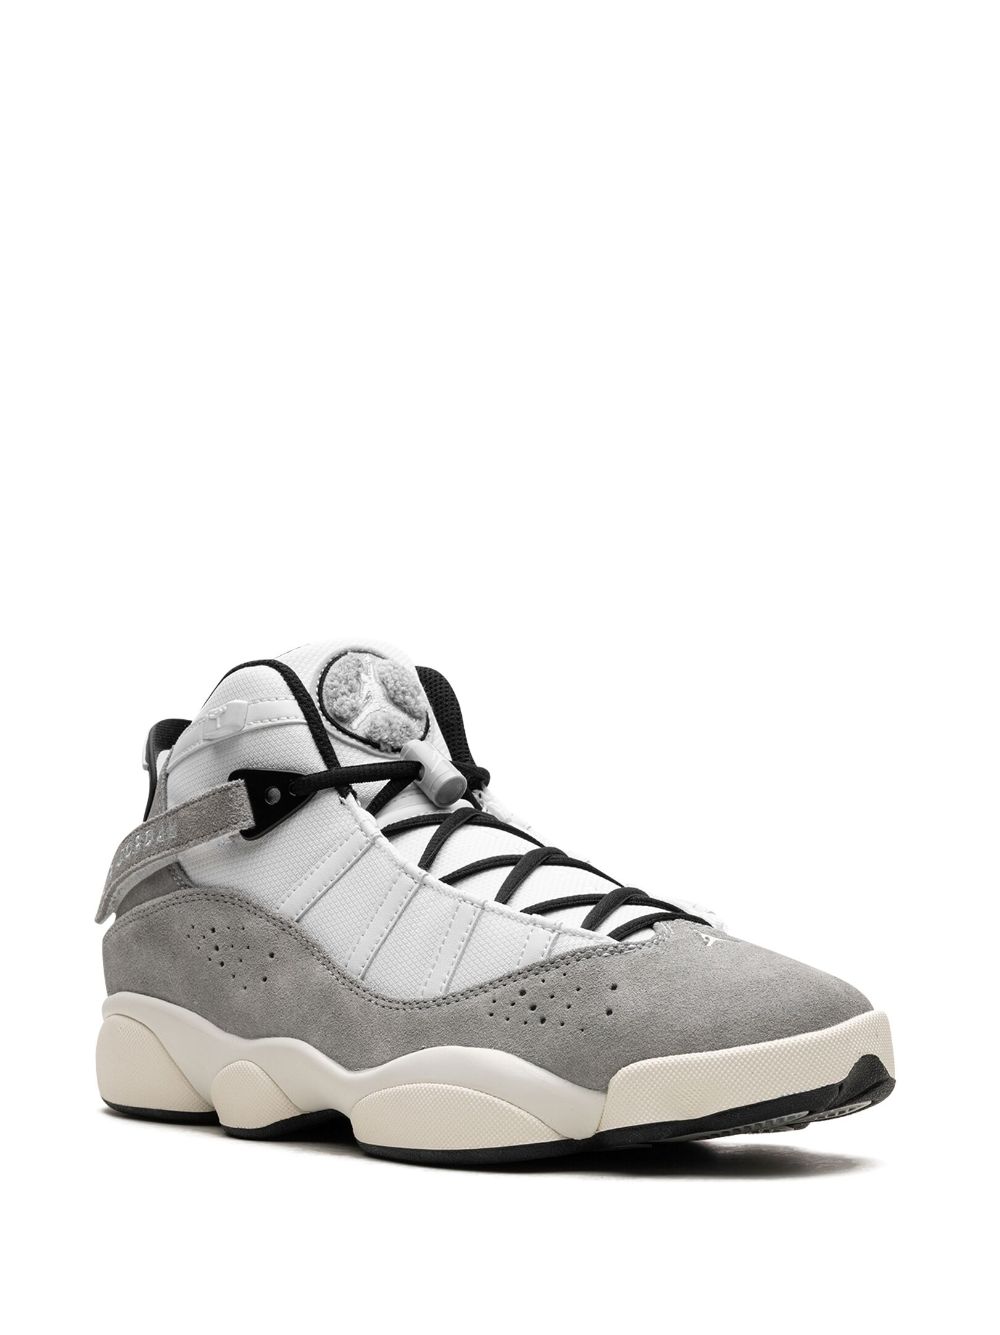 Image 2 of Jordan Jordan 6 Rings "Cement Grey" sneakers